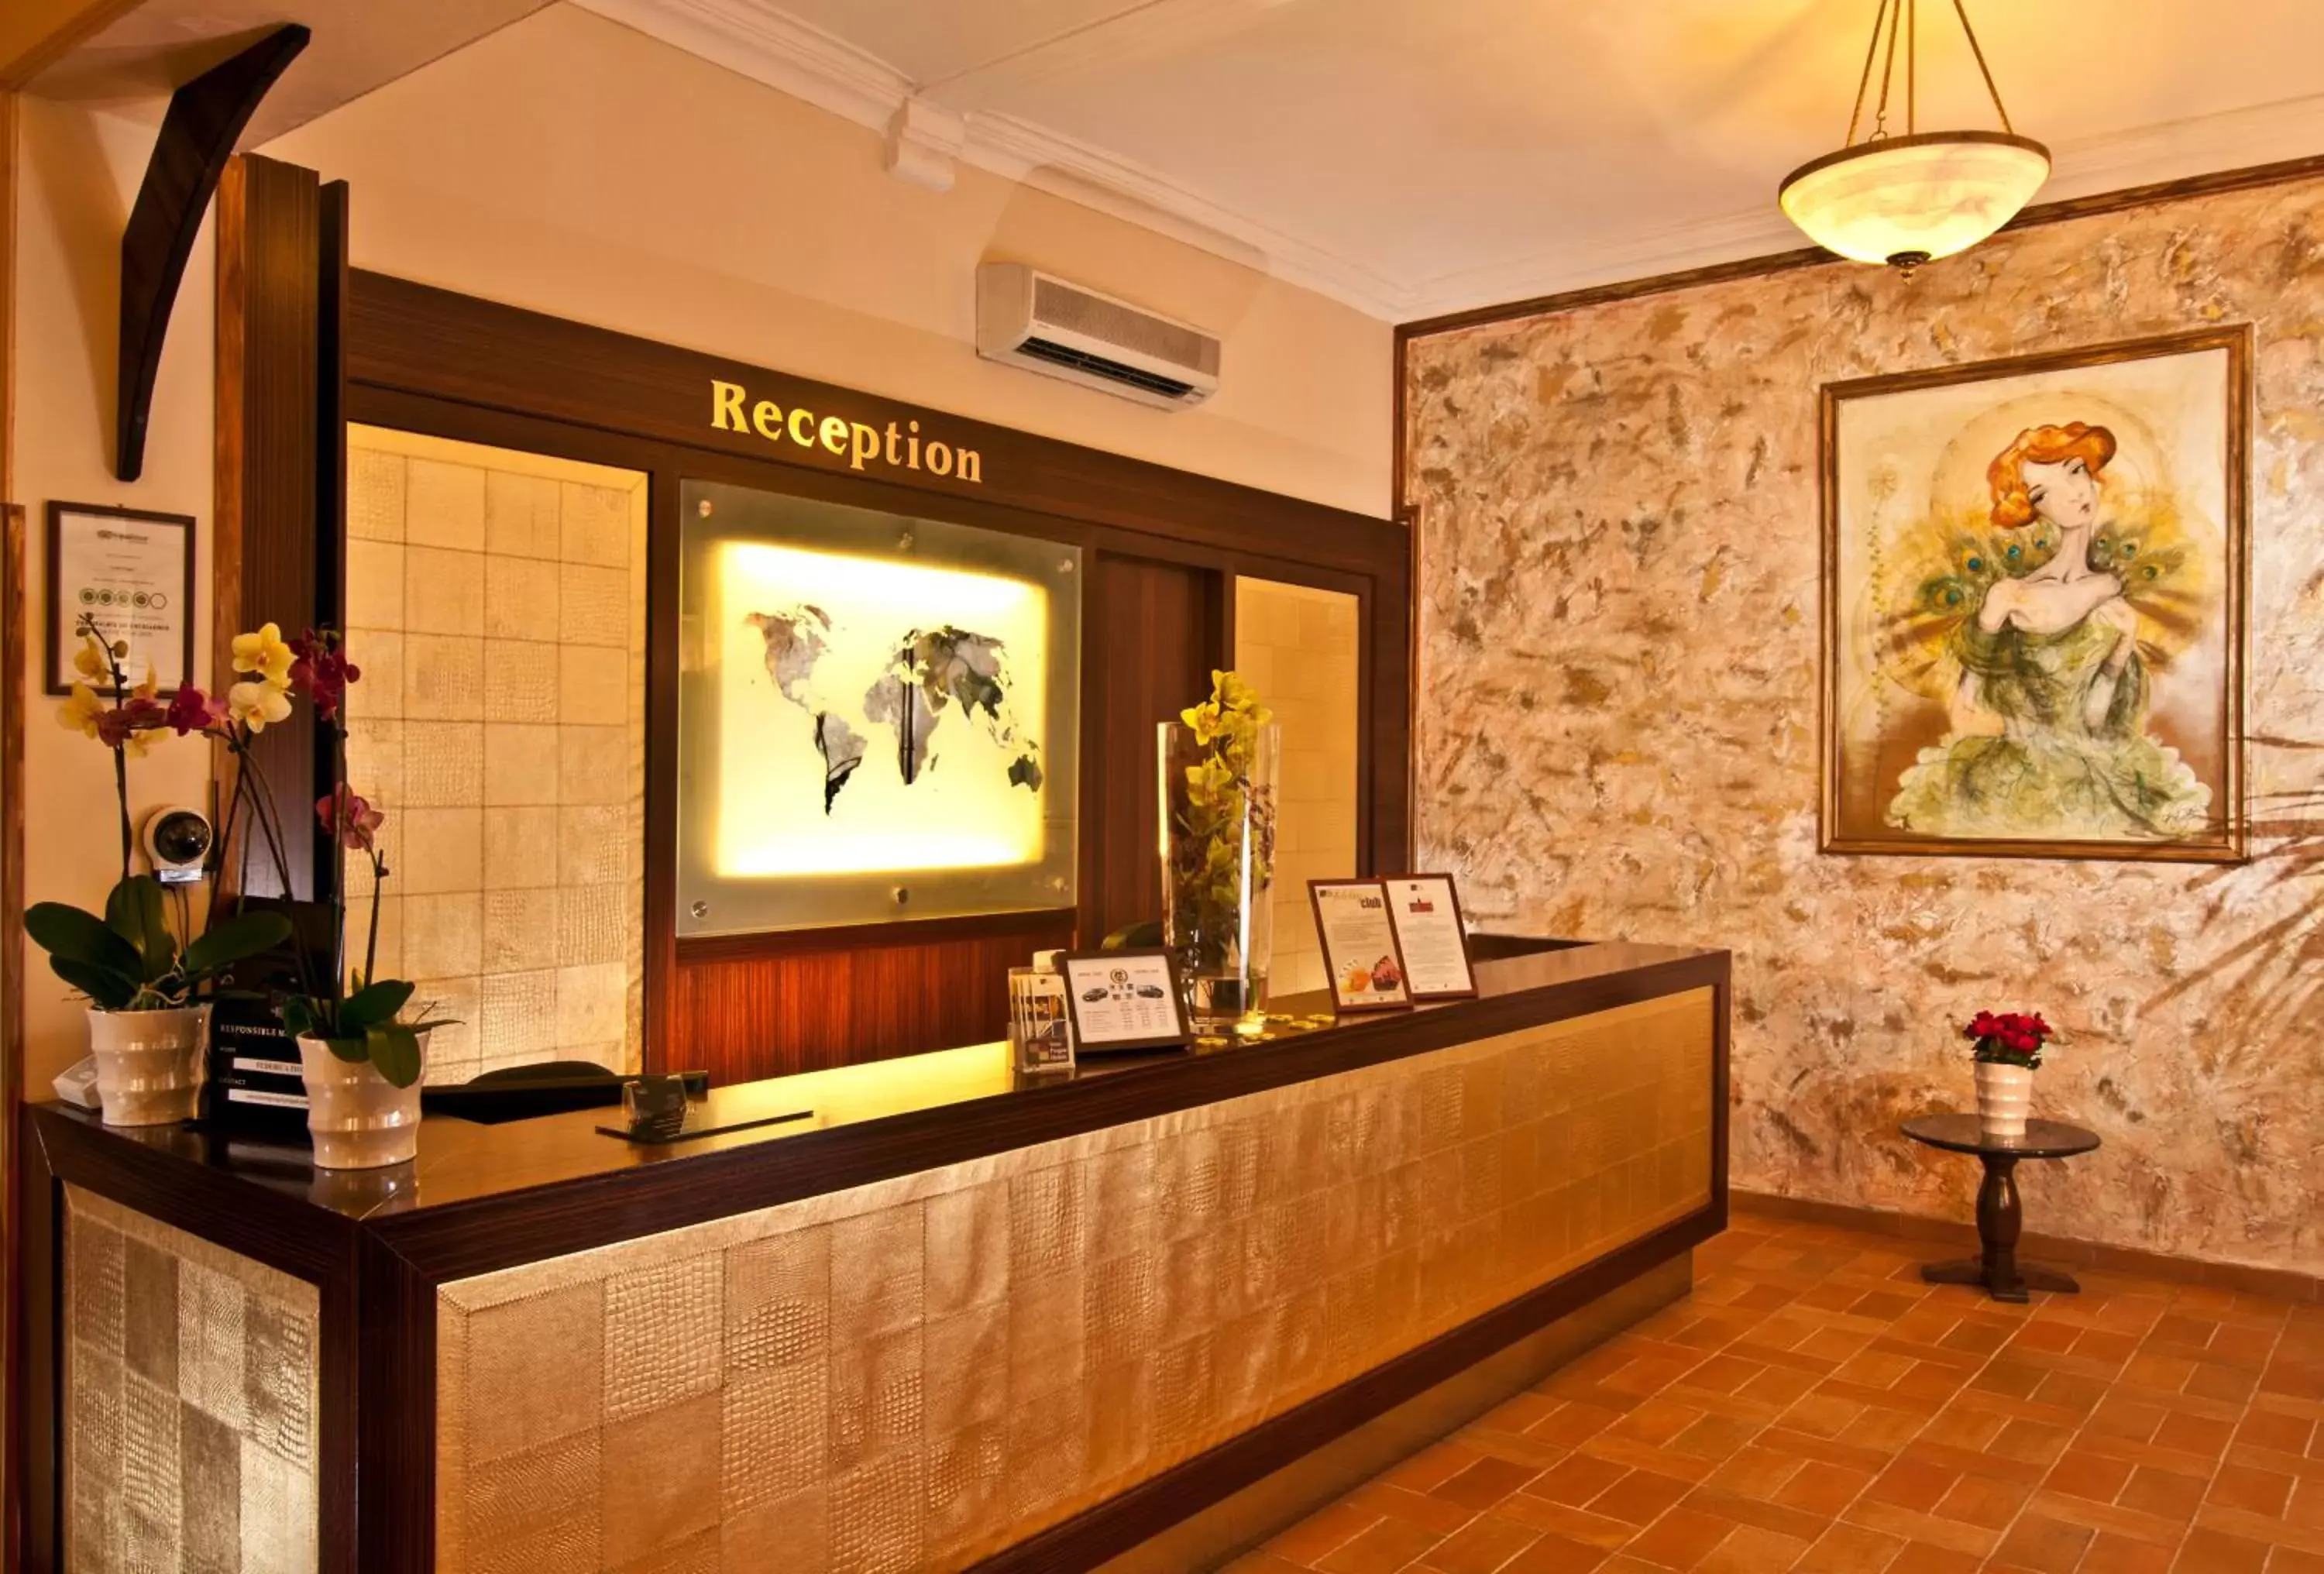 Lobby or reception, Lobby/Reception in Hotel Praga 1